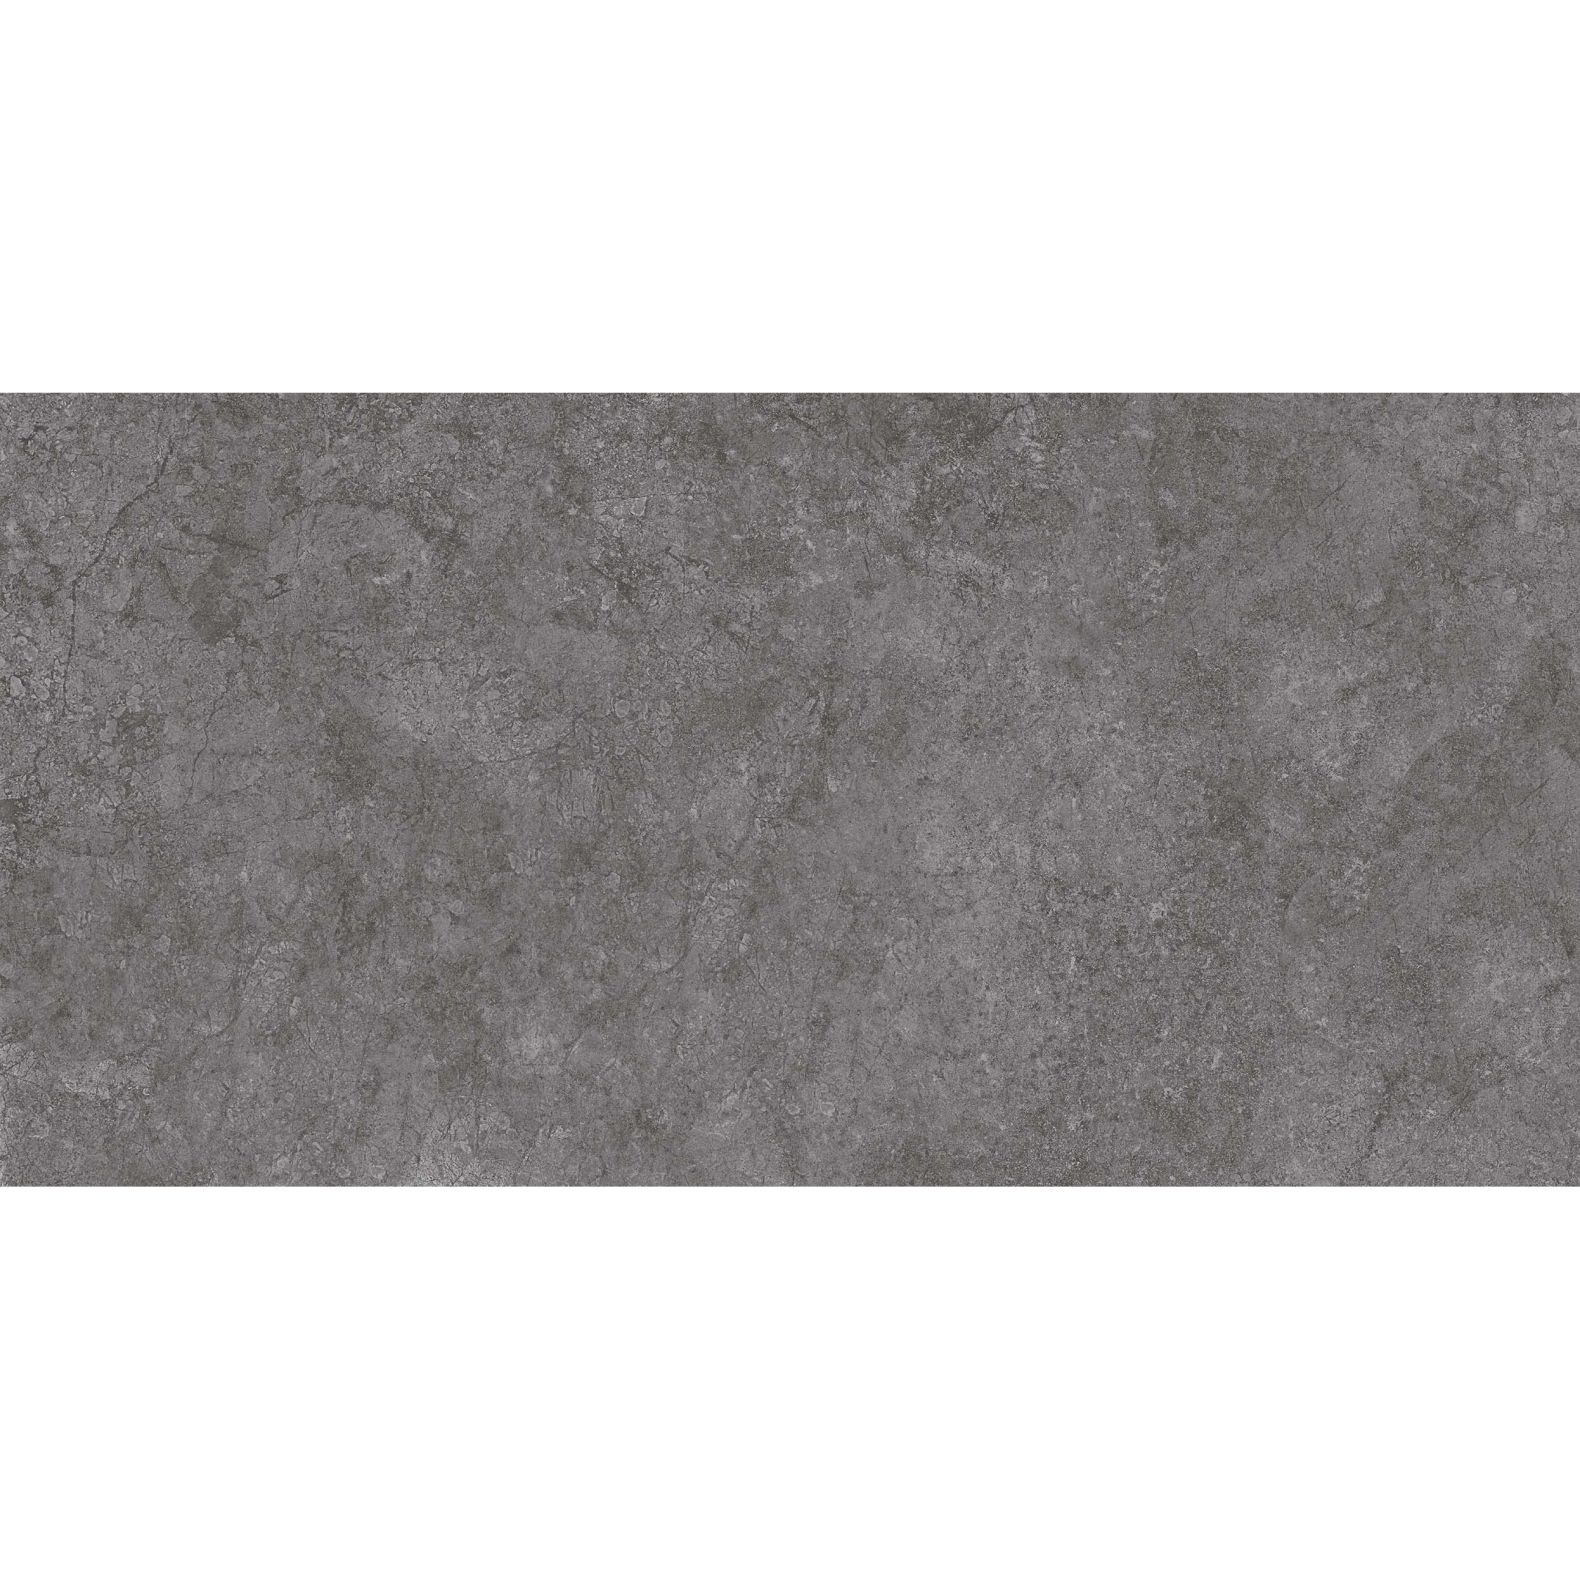 Керамическая плитка Eurotile Montral Dark 30х60 см (177)